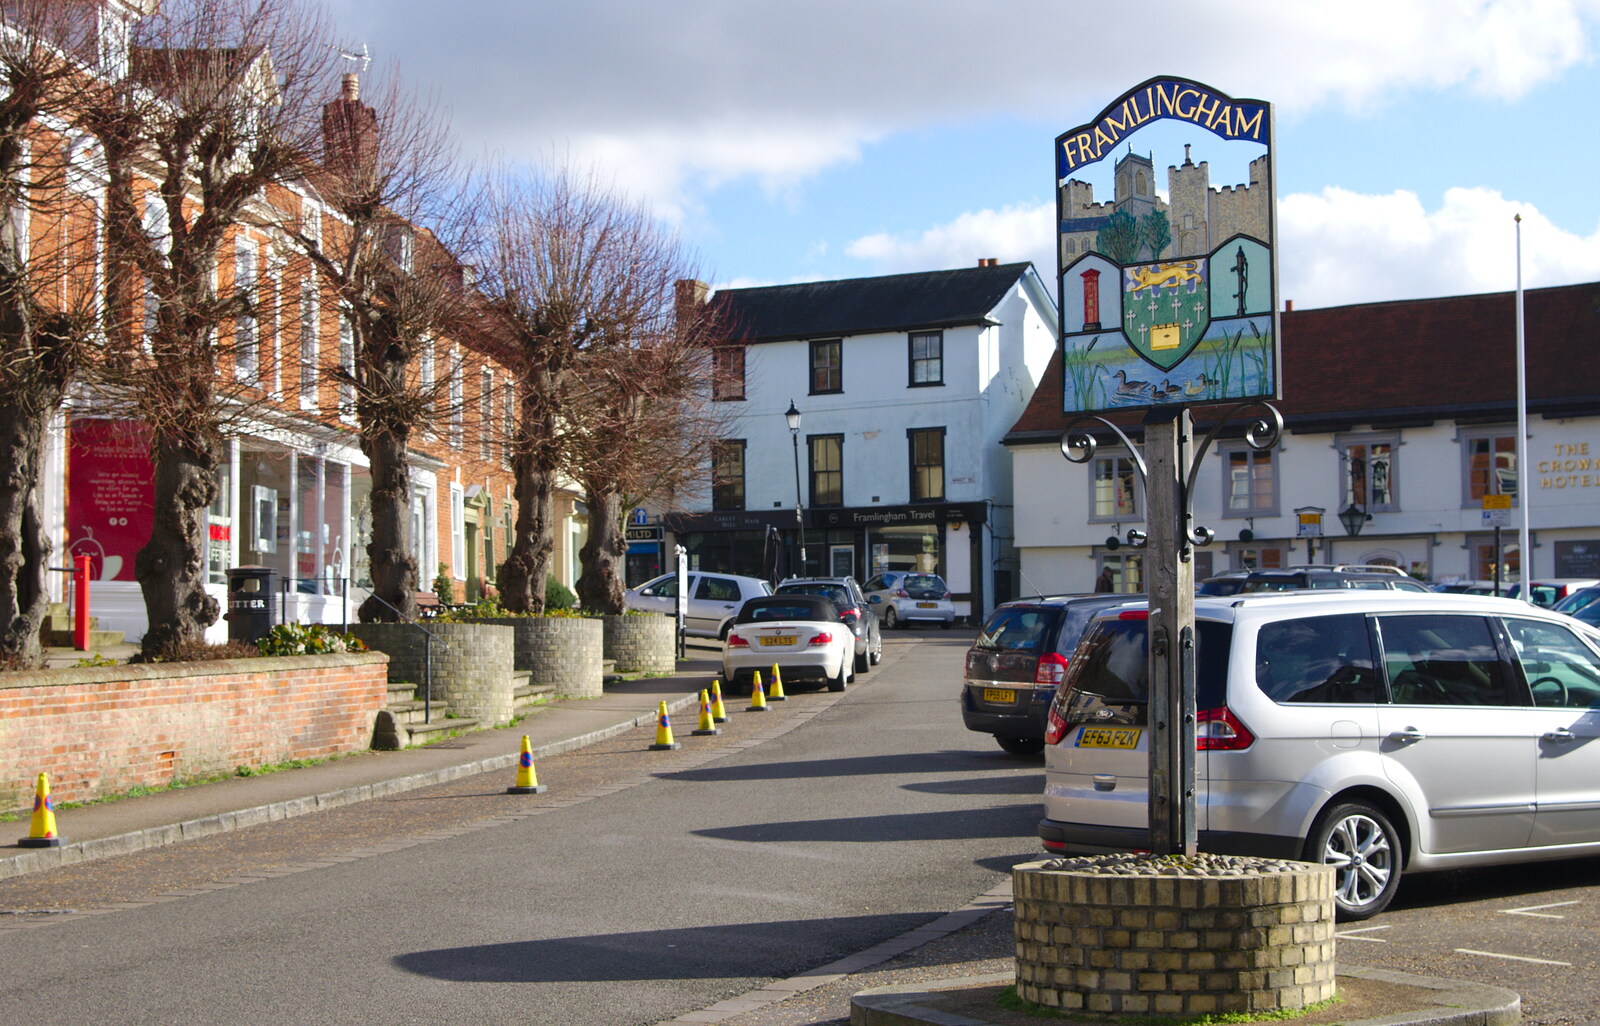 Framlingham town centre from A Trip to Framlingham Castle, Framlingham, Suffolk - 16th February 2014